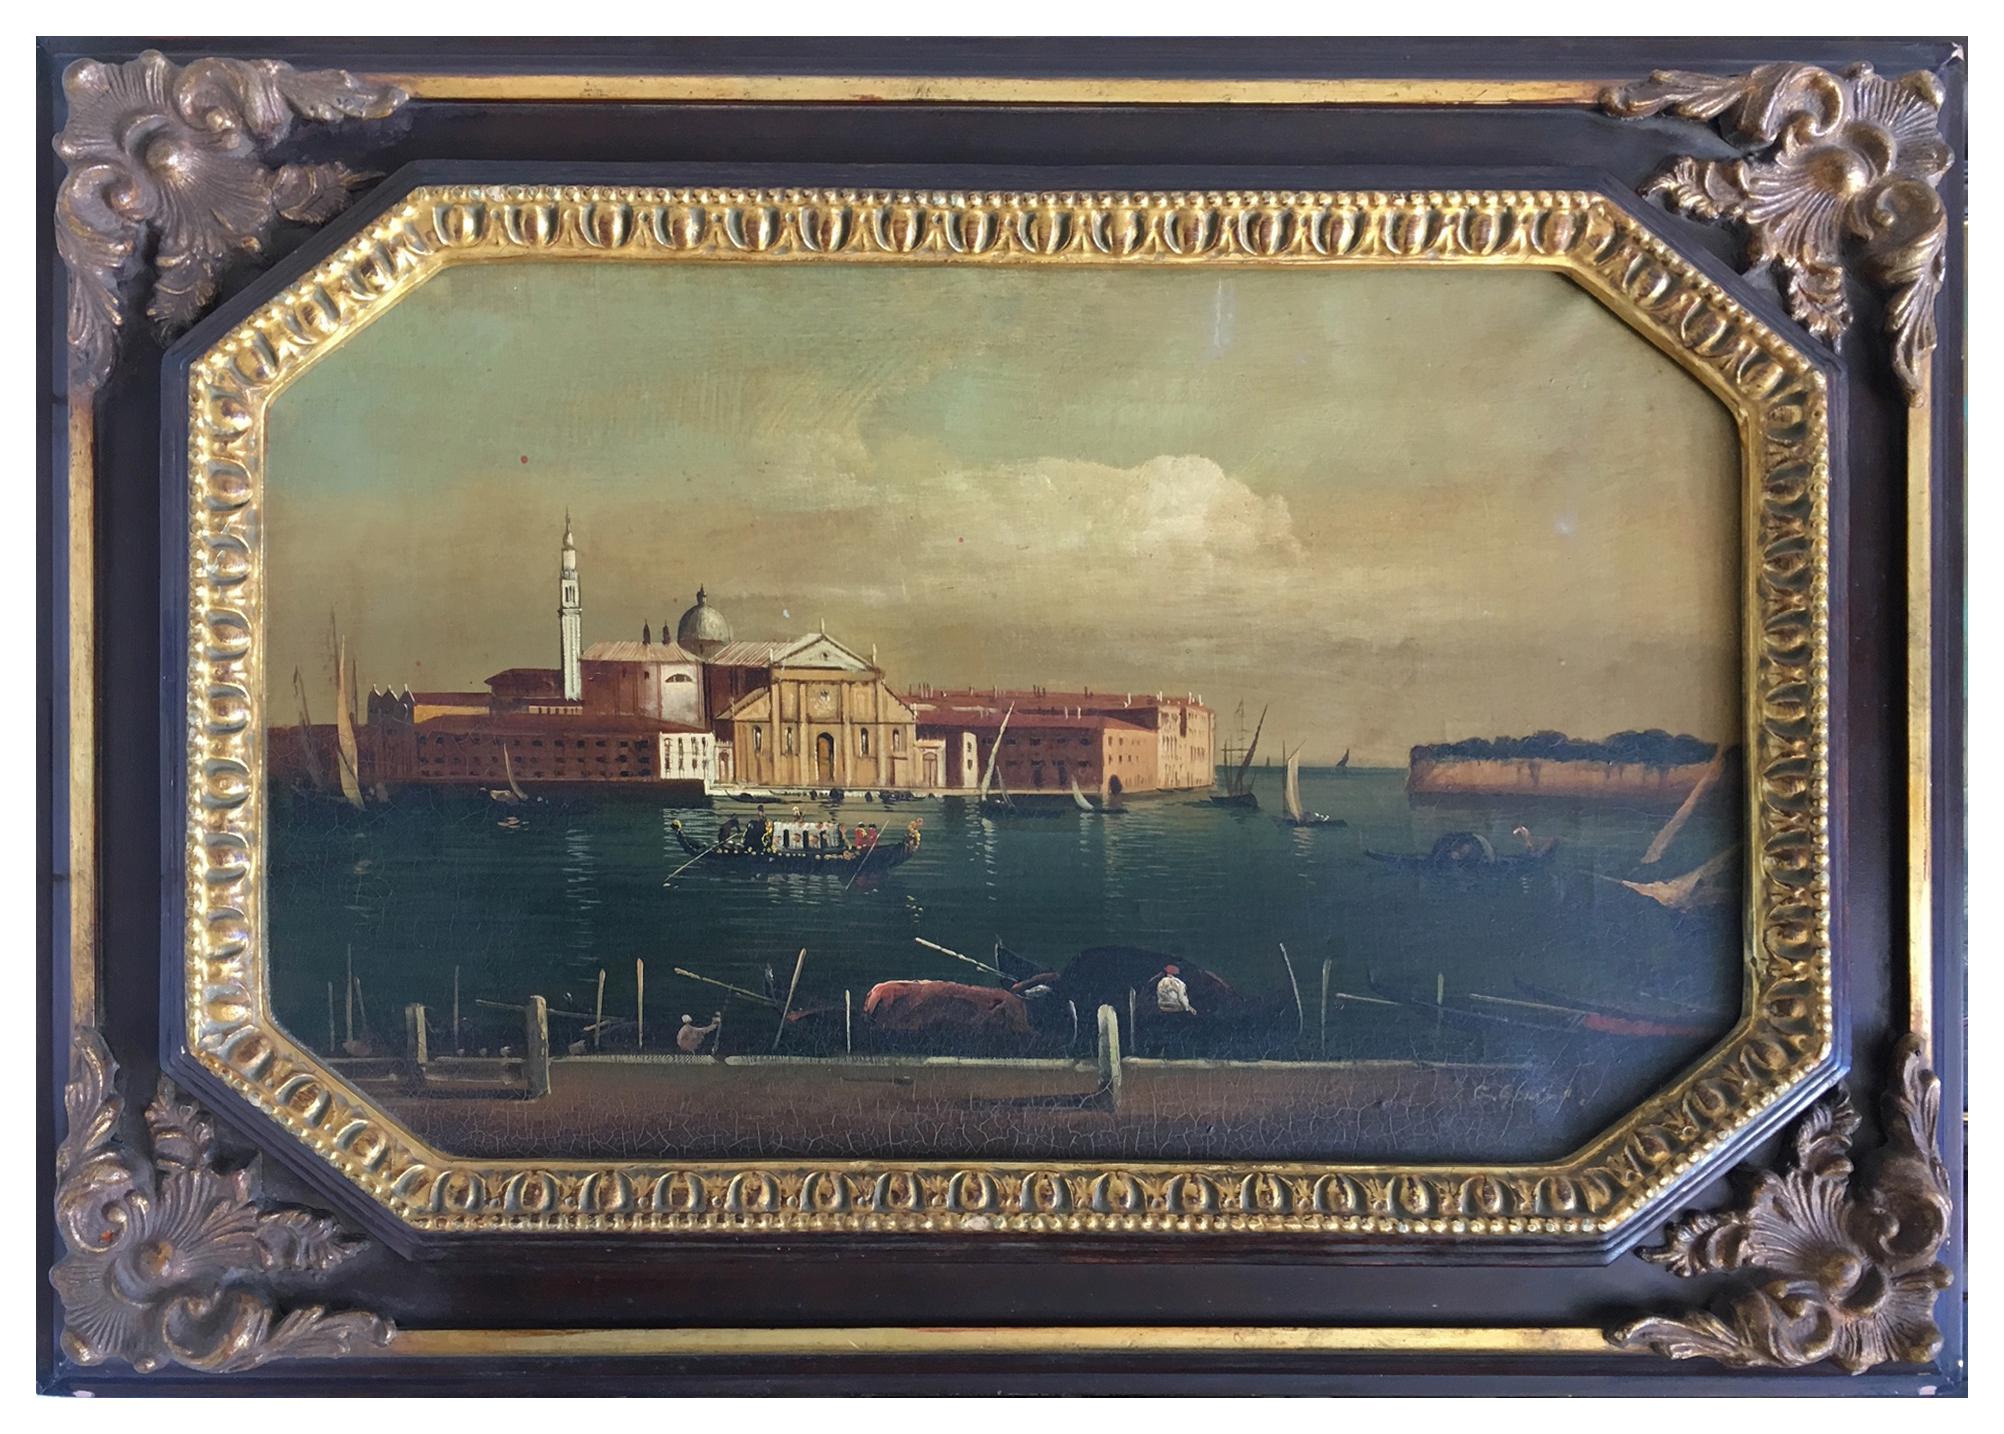 VENICE - À la manière de Canaletto - Peinture à l'huile sur toile - Paysage italien